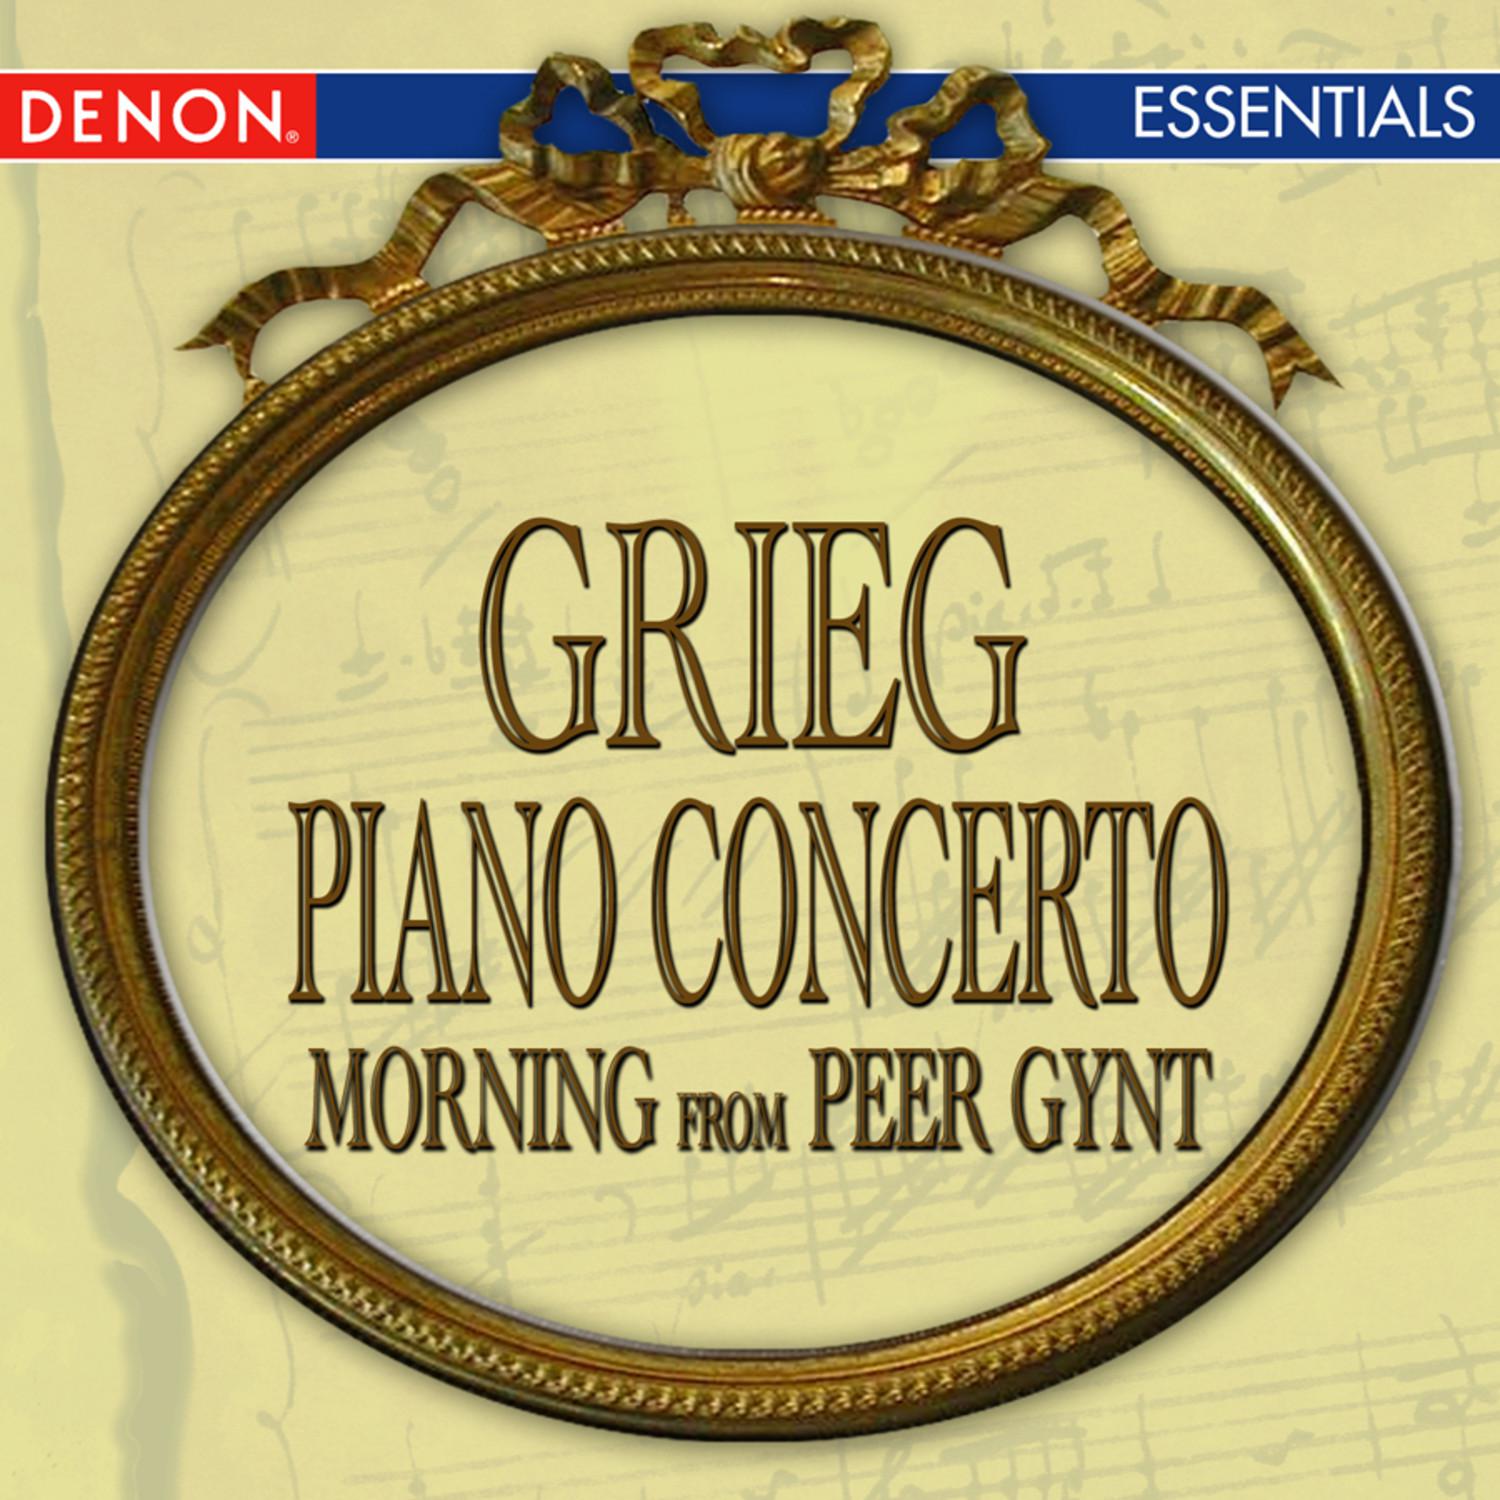 Peer Gynt Suite No. 1, Op. 46: Morning Mood